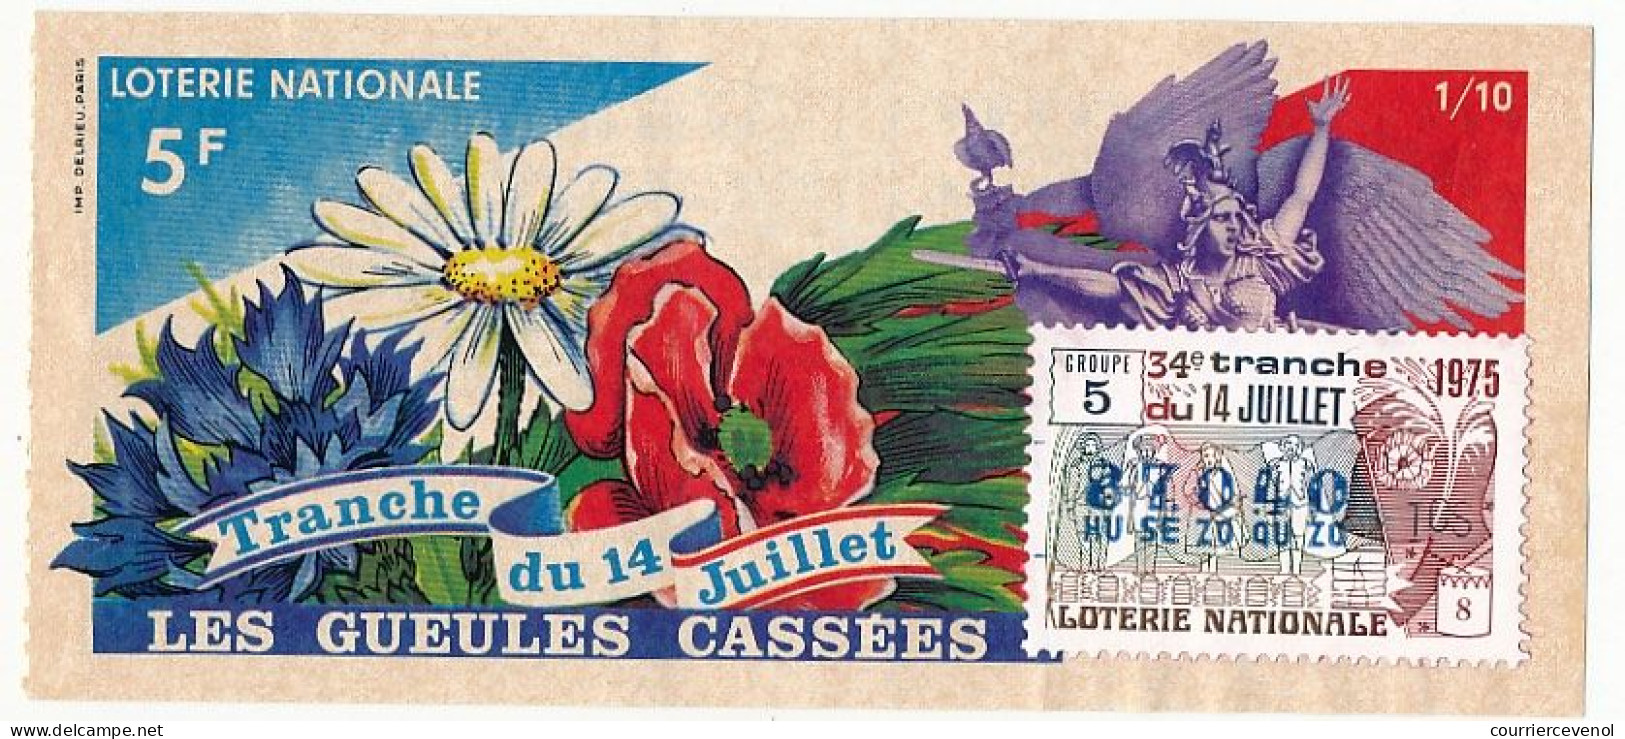 FRANCE - Loterie Nationale - Tranche Du 14 Juillet - Gueules Cassées - 34ème Tranche 1975 1/10ème - Billets De Loterie